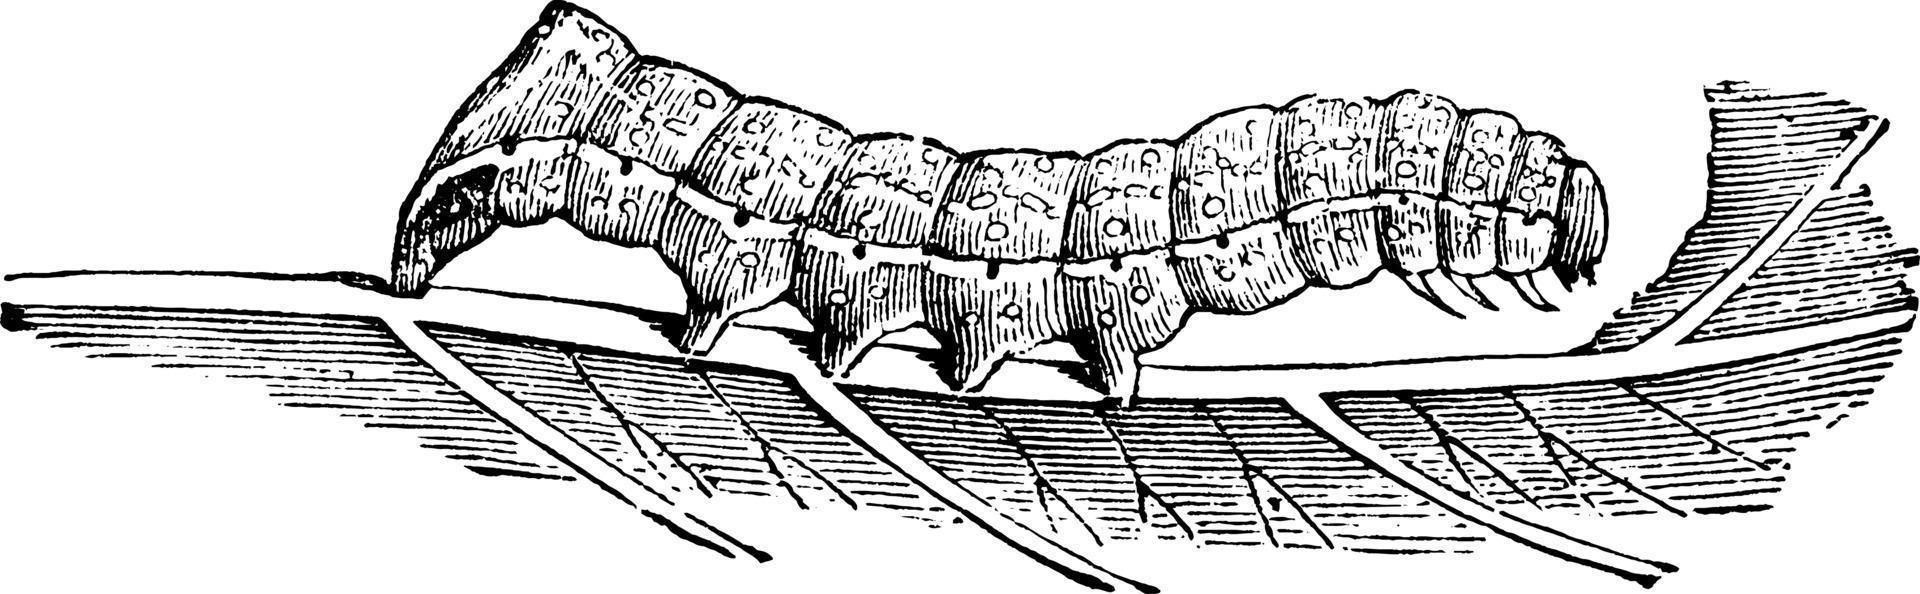 polilla subalares de cobre americano o pyrophila pyramidoides, ilustración vintage. vector